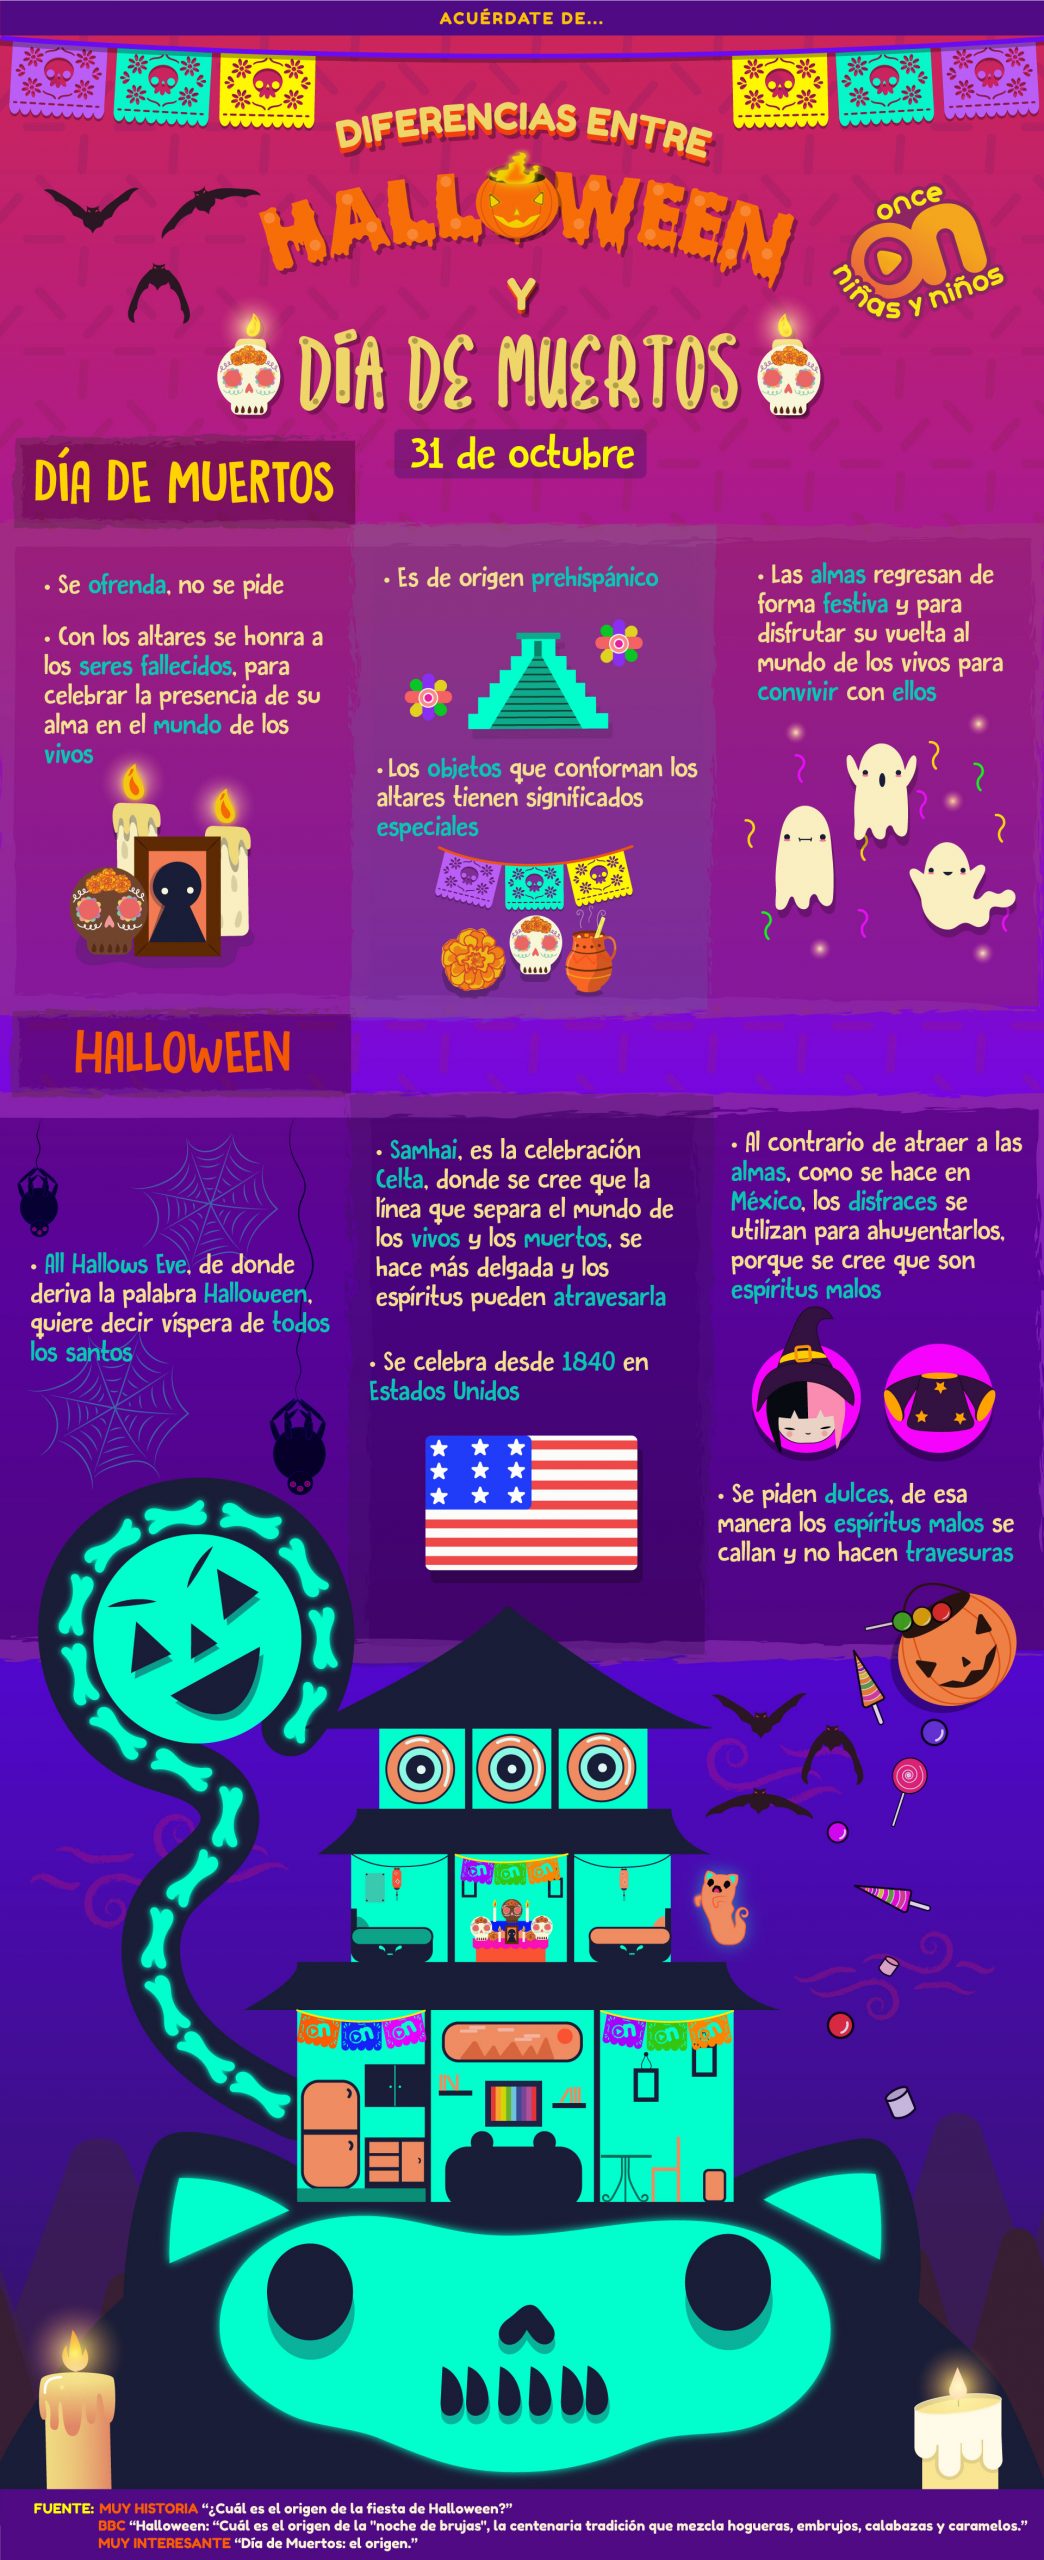 Diferencias entre Halloween y Día de Muertos 
31 de octubre
Once Niñas y Niños 